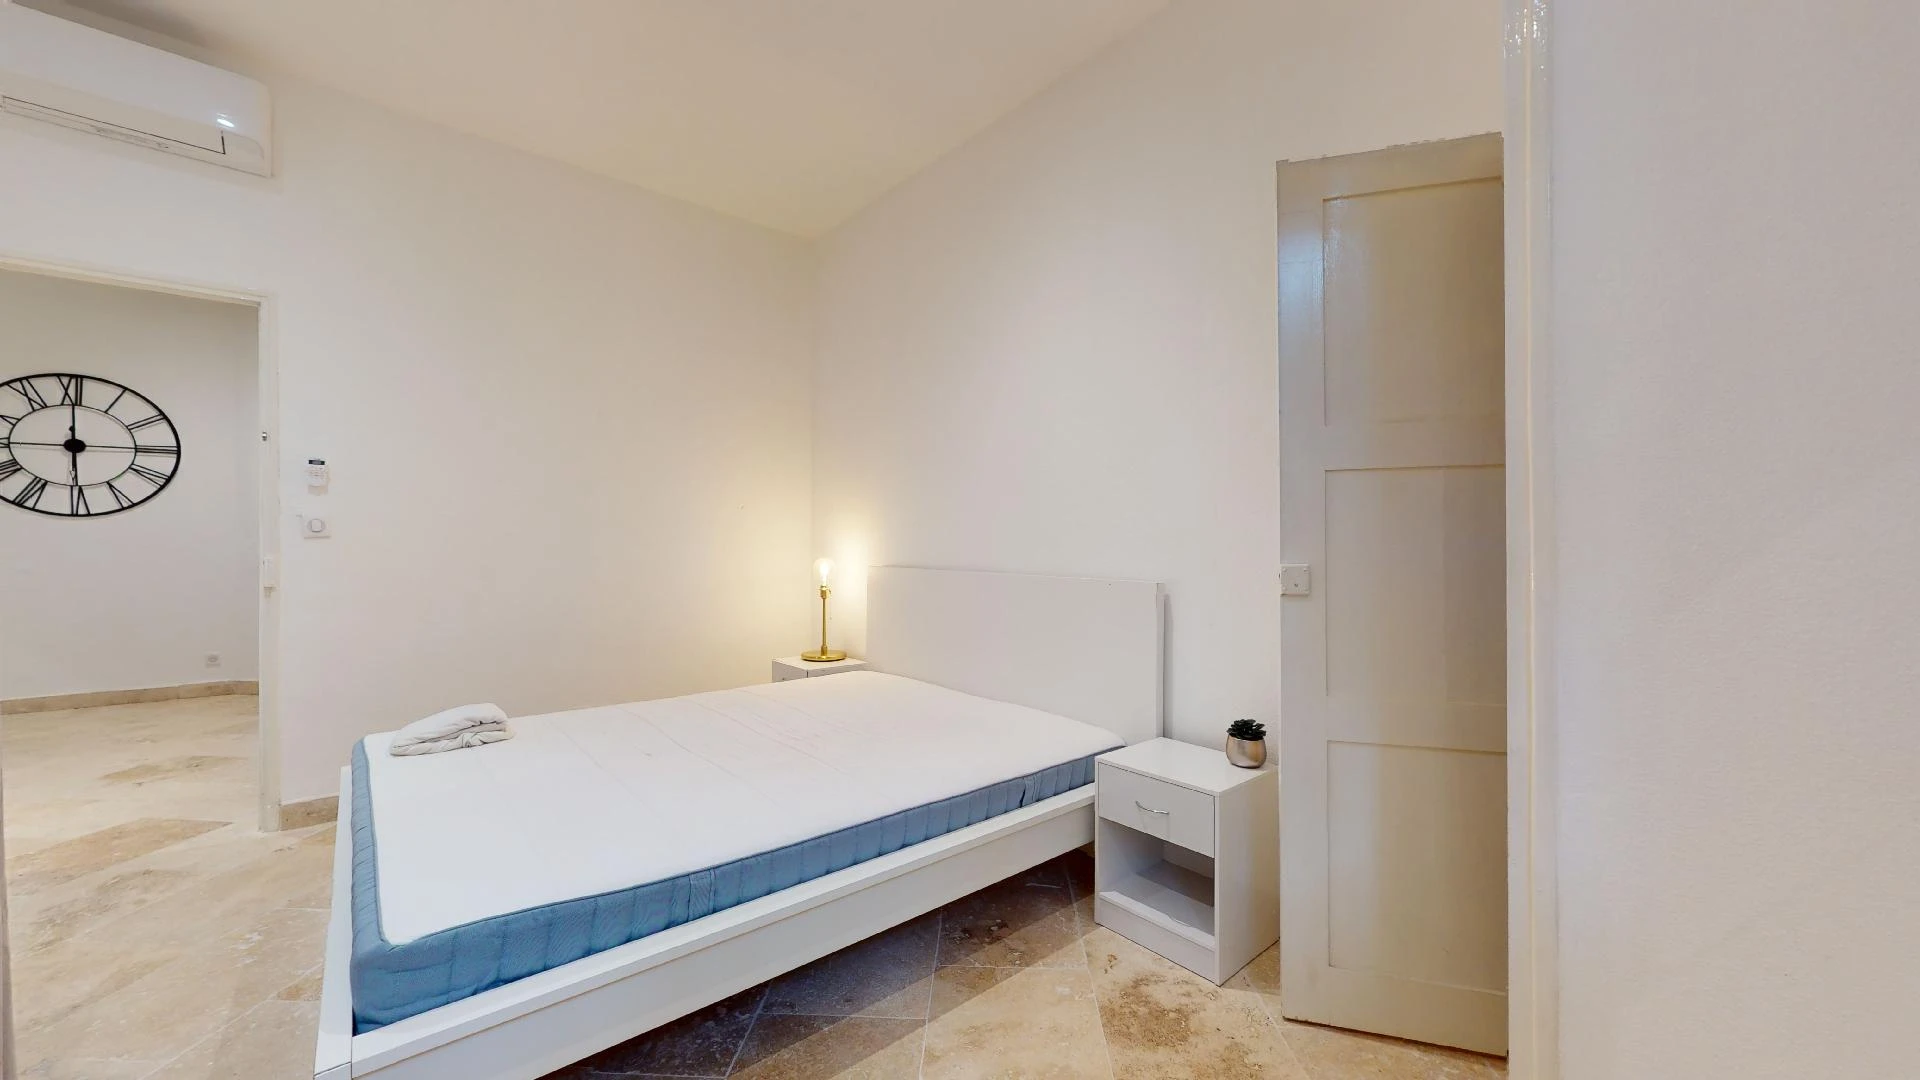 Chambre à louer dans un appartement en colocation à Avignon